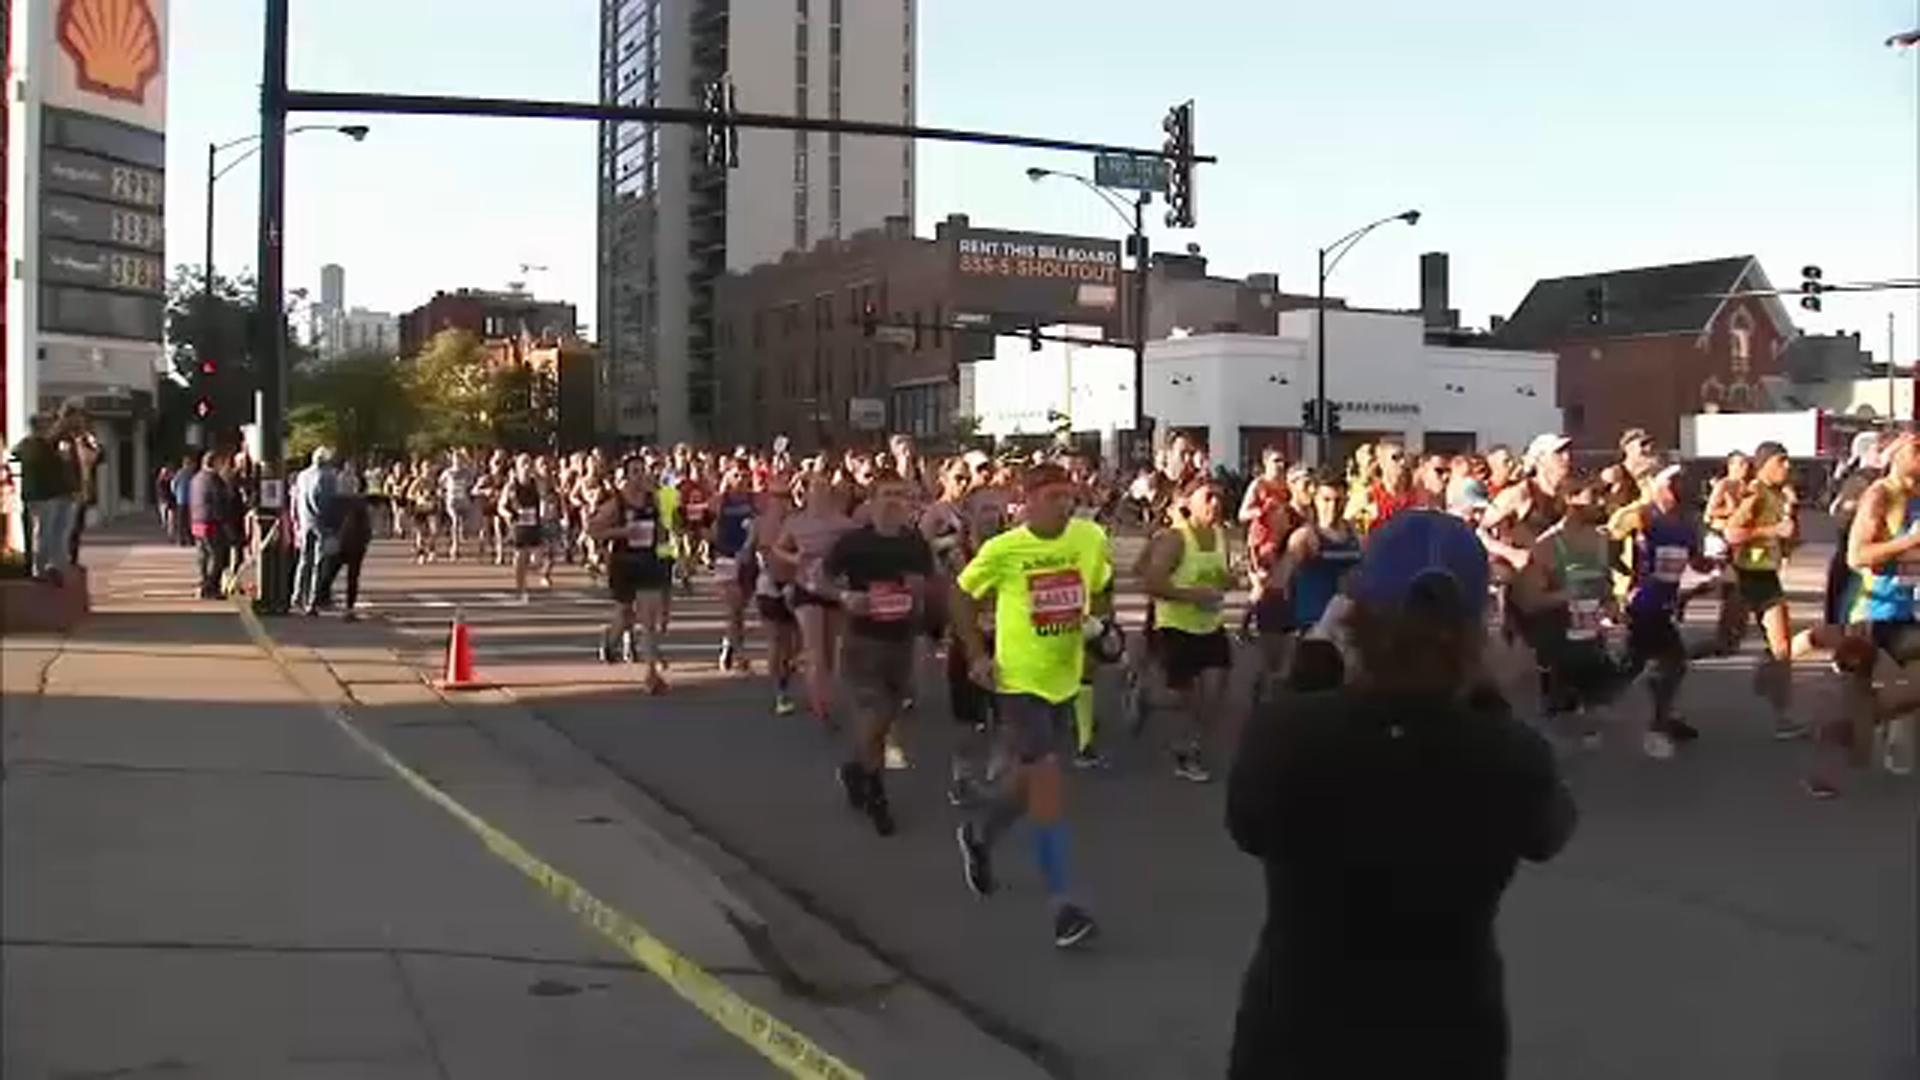 chicago marathon: route, street closures, public